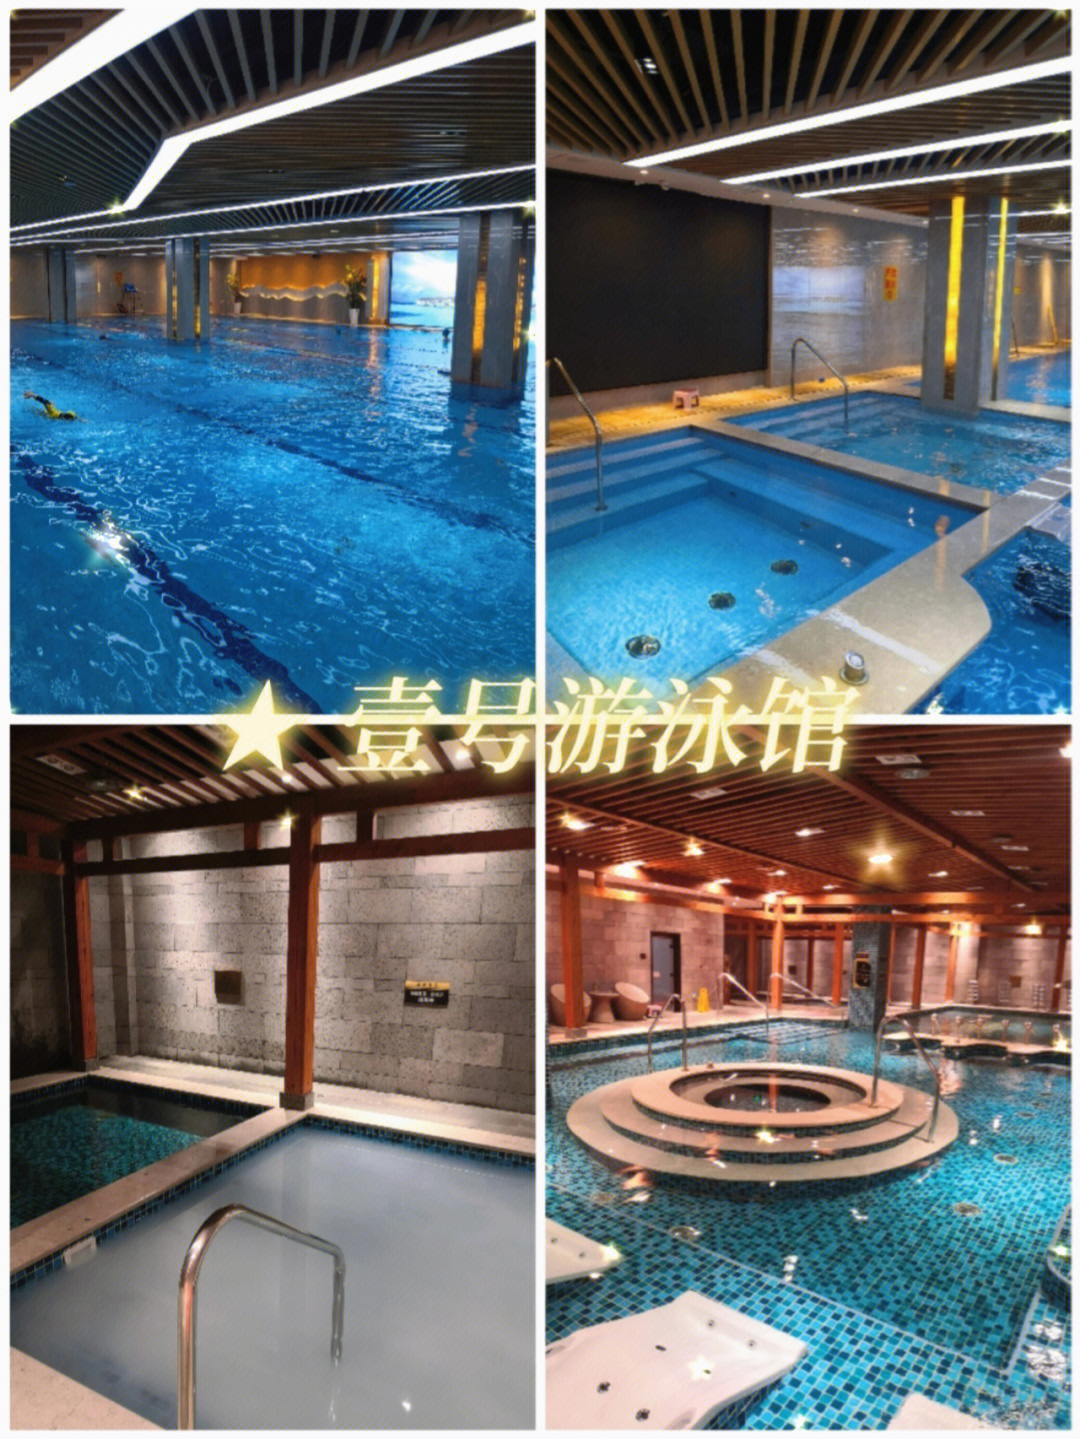 场)98门票购买方式:美团94壹号游泳馆是温州市第一座智能高端游泳